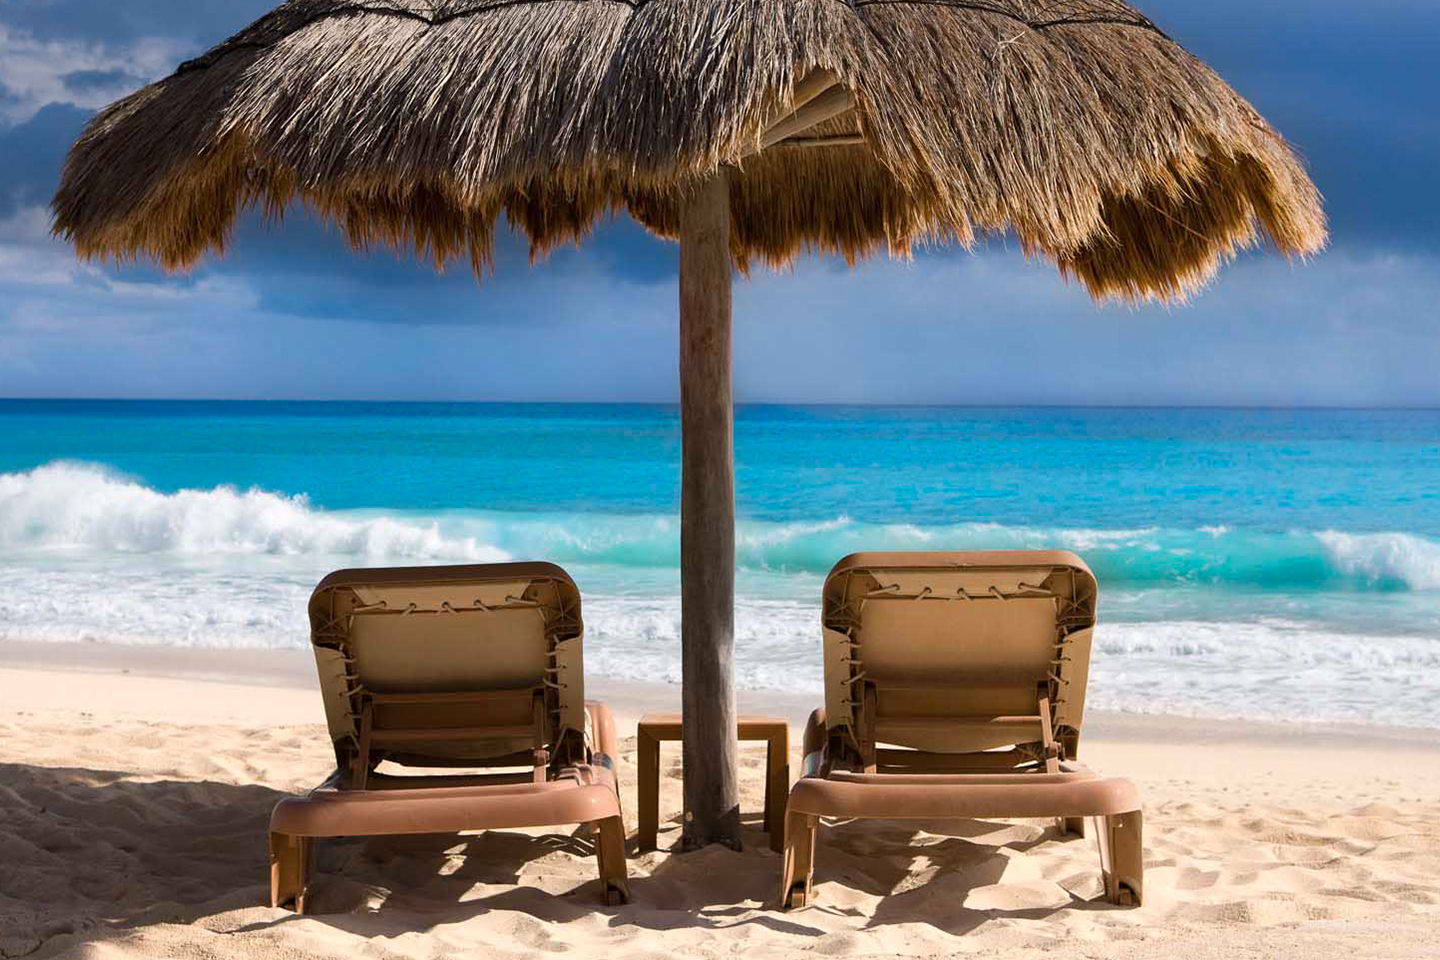 ¿Con cuánto dinero viajar a Cancún?